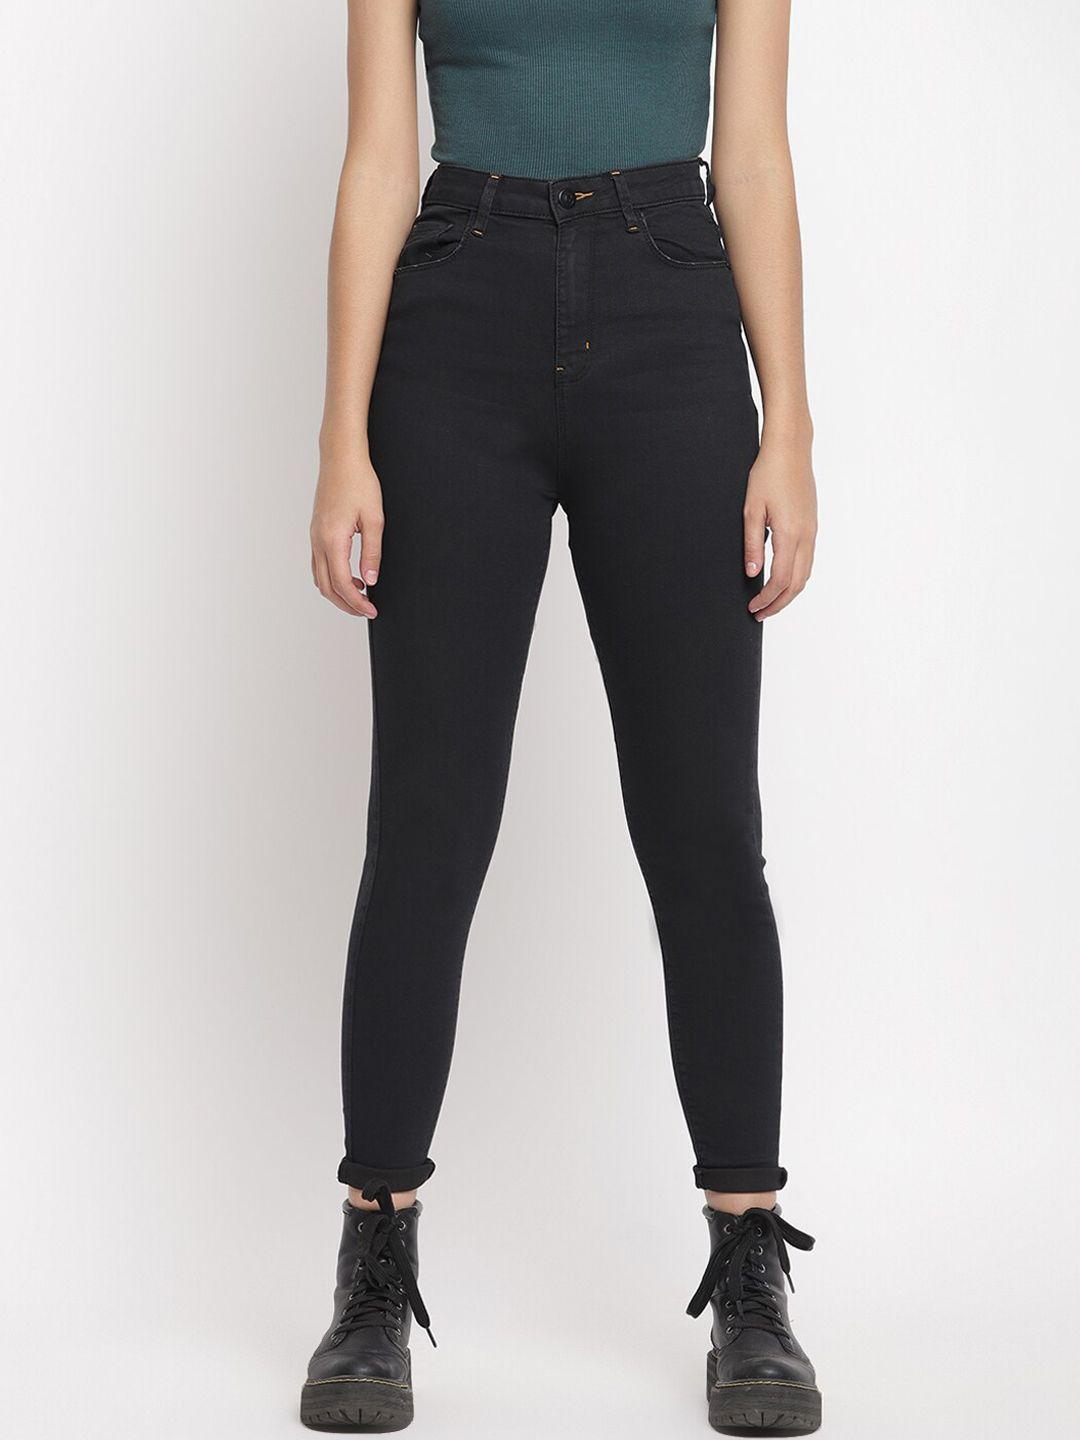 belliskey-women-black-super-skinny-fit-high-rise-clean-look-jeans